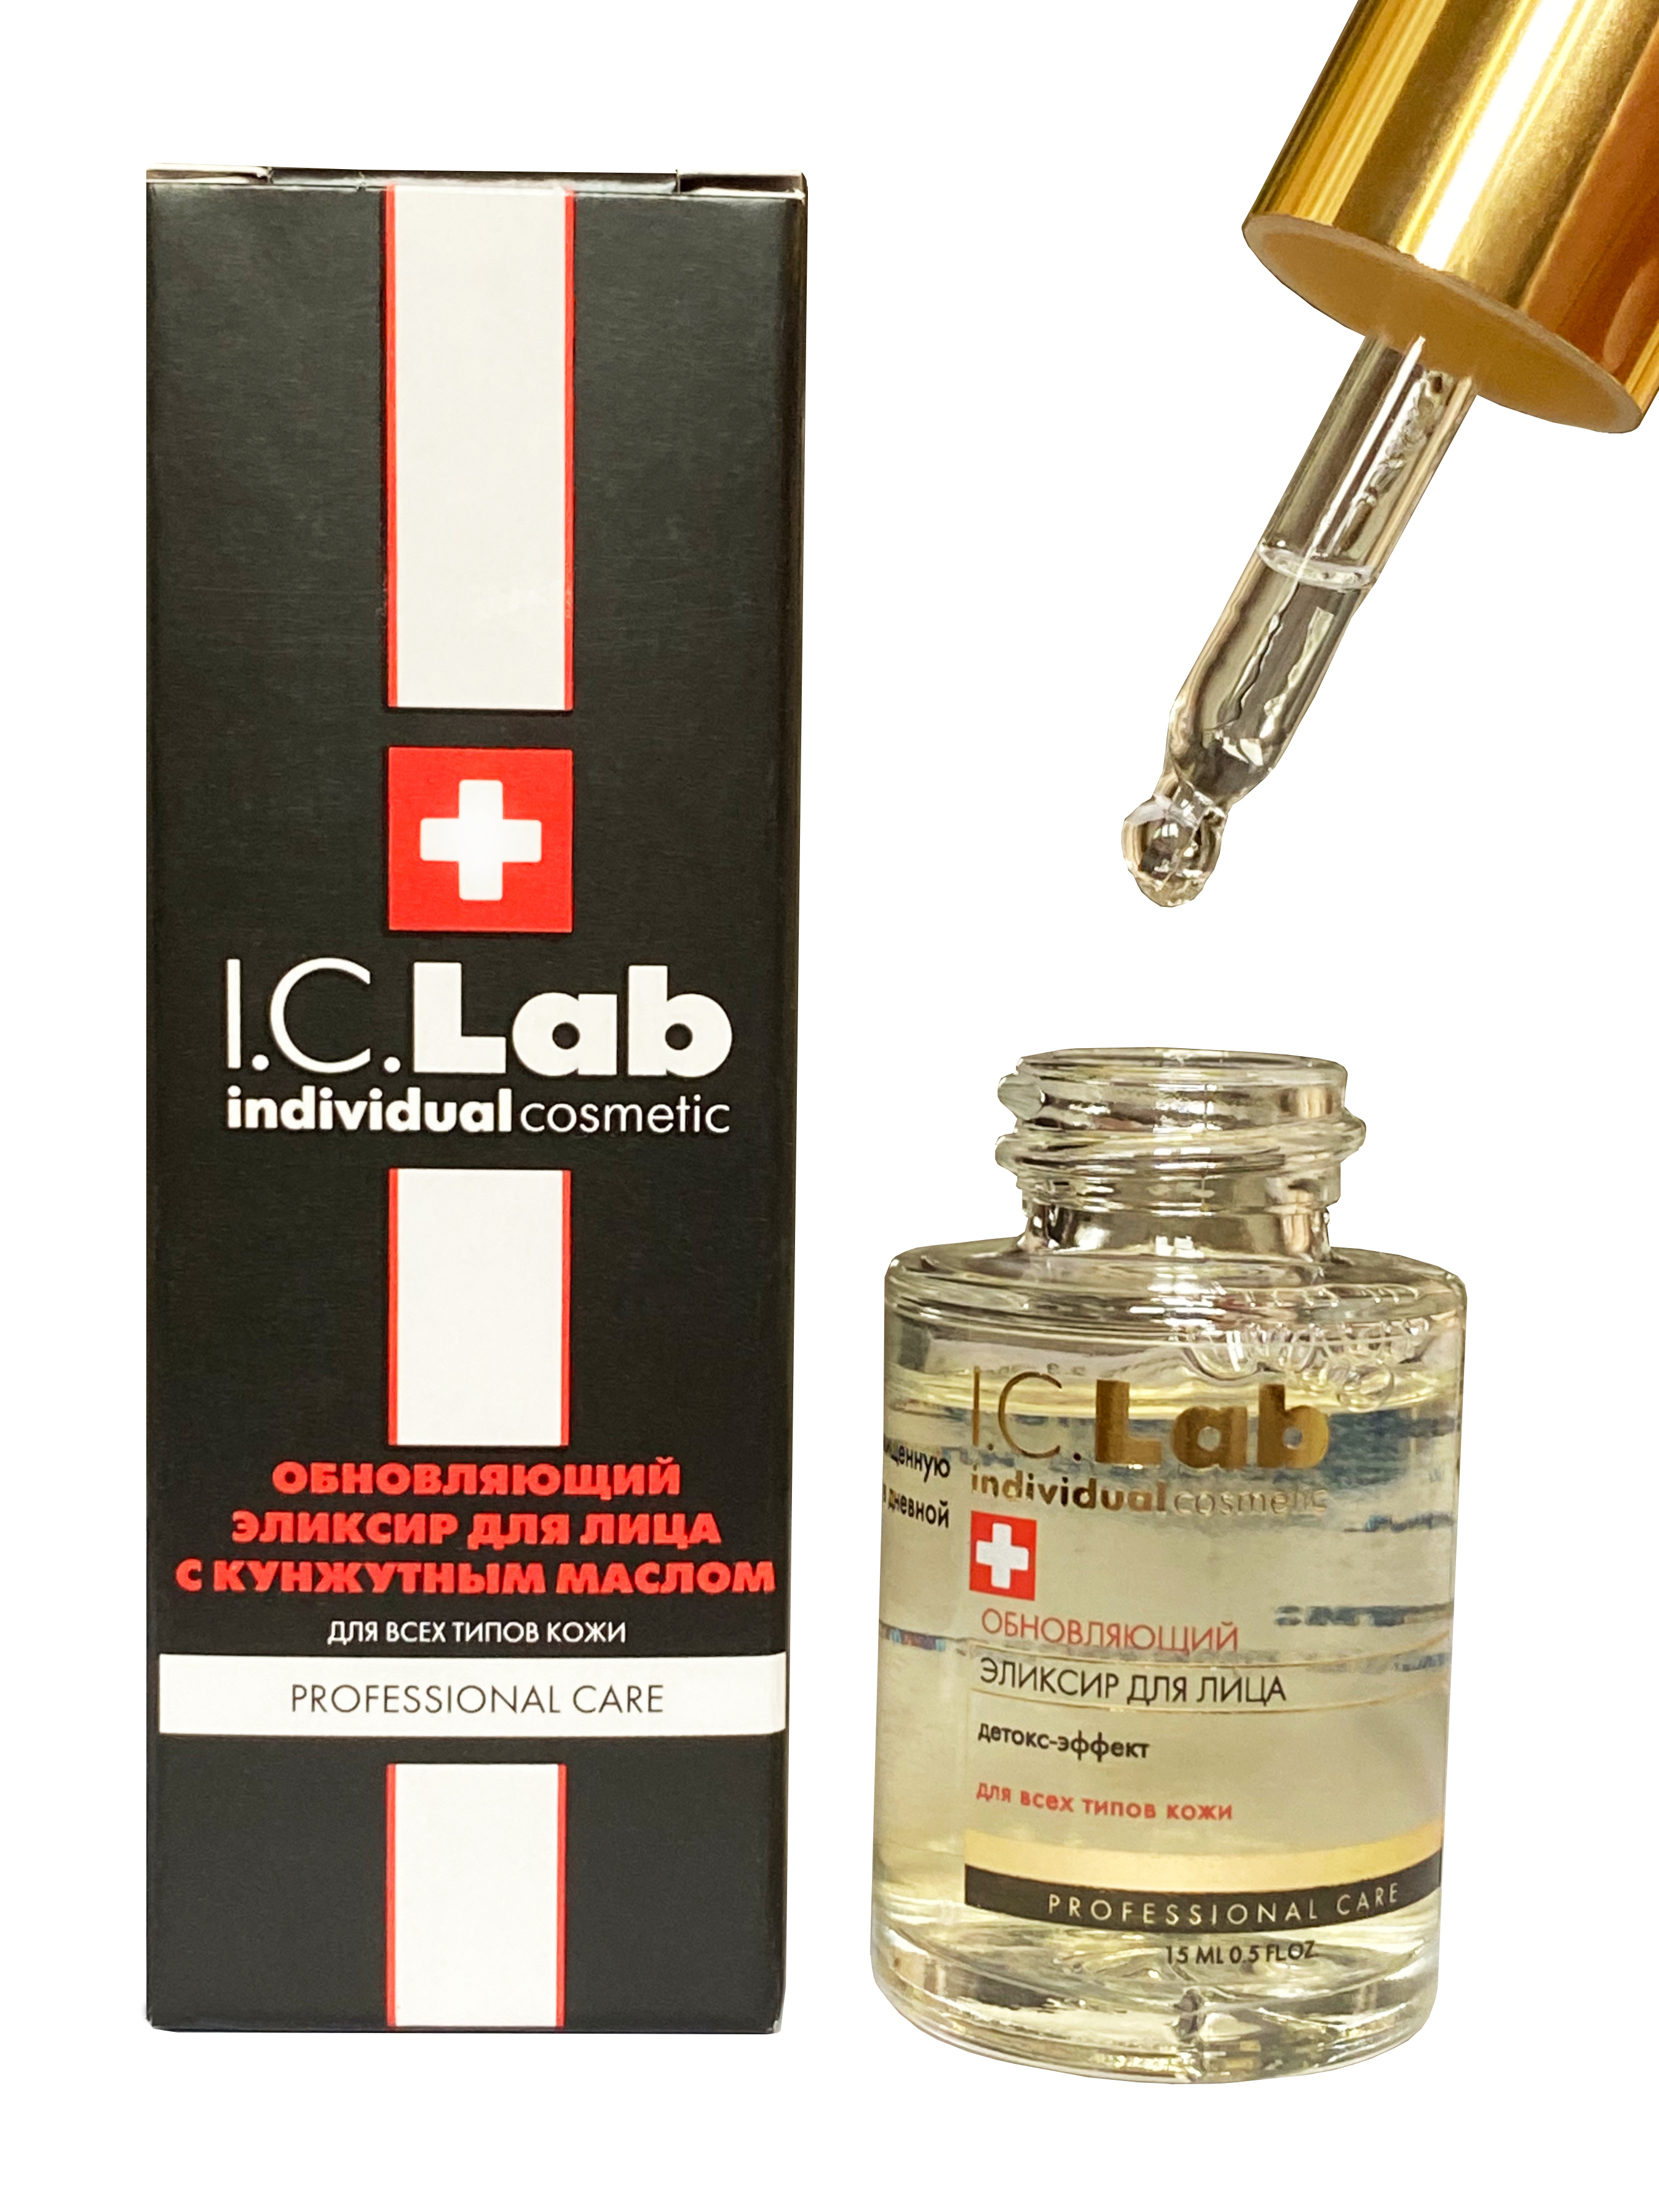 Обновляющий эликсир для лица с кунжутным маслом I.C.Lab Individual cosmetic i c lab обновляющий эликсир для лица с кунжутным маслом 15